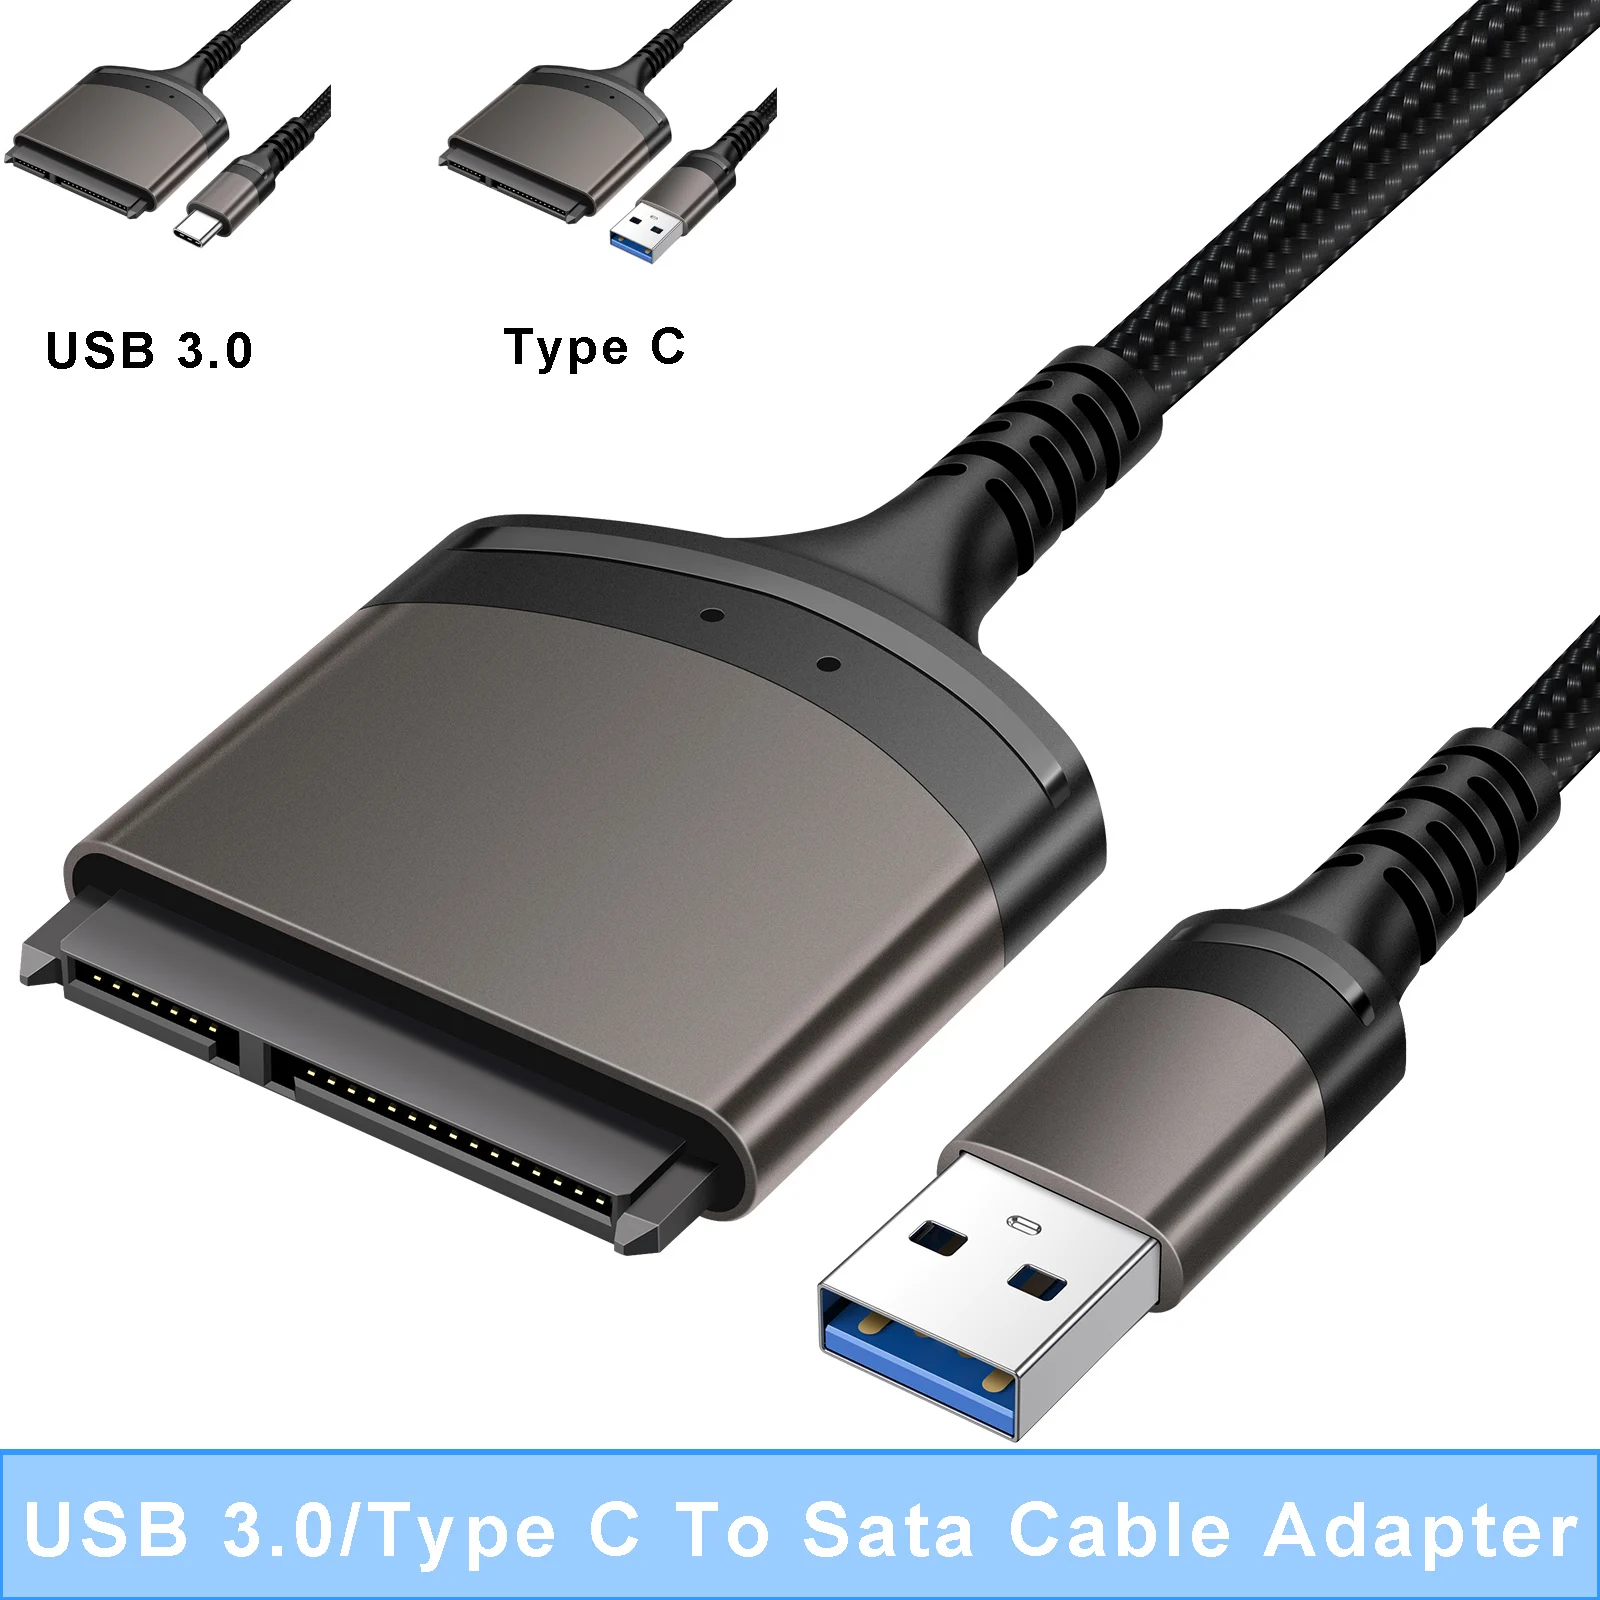 

Переходник с USB 3,0/Type C на SATA кабель 6 Гбит/с для внешнего жесткого диска 2,5 дюйма SSD жесткого диска SATA 3 22-контактный адаптер SATA кабели 23 см